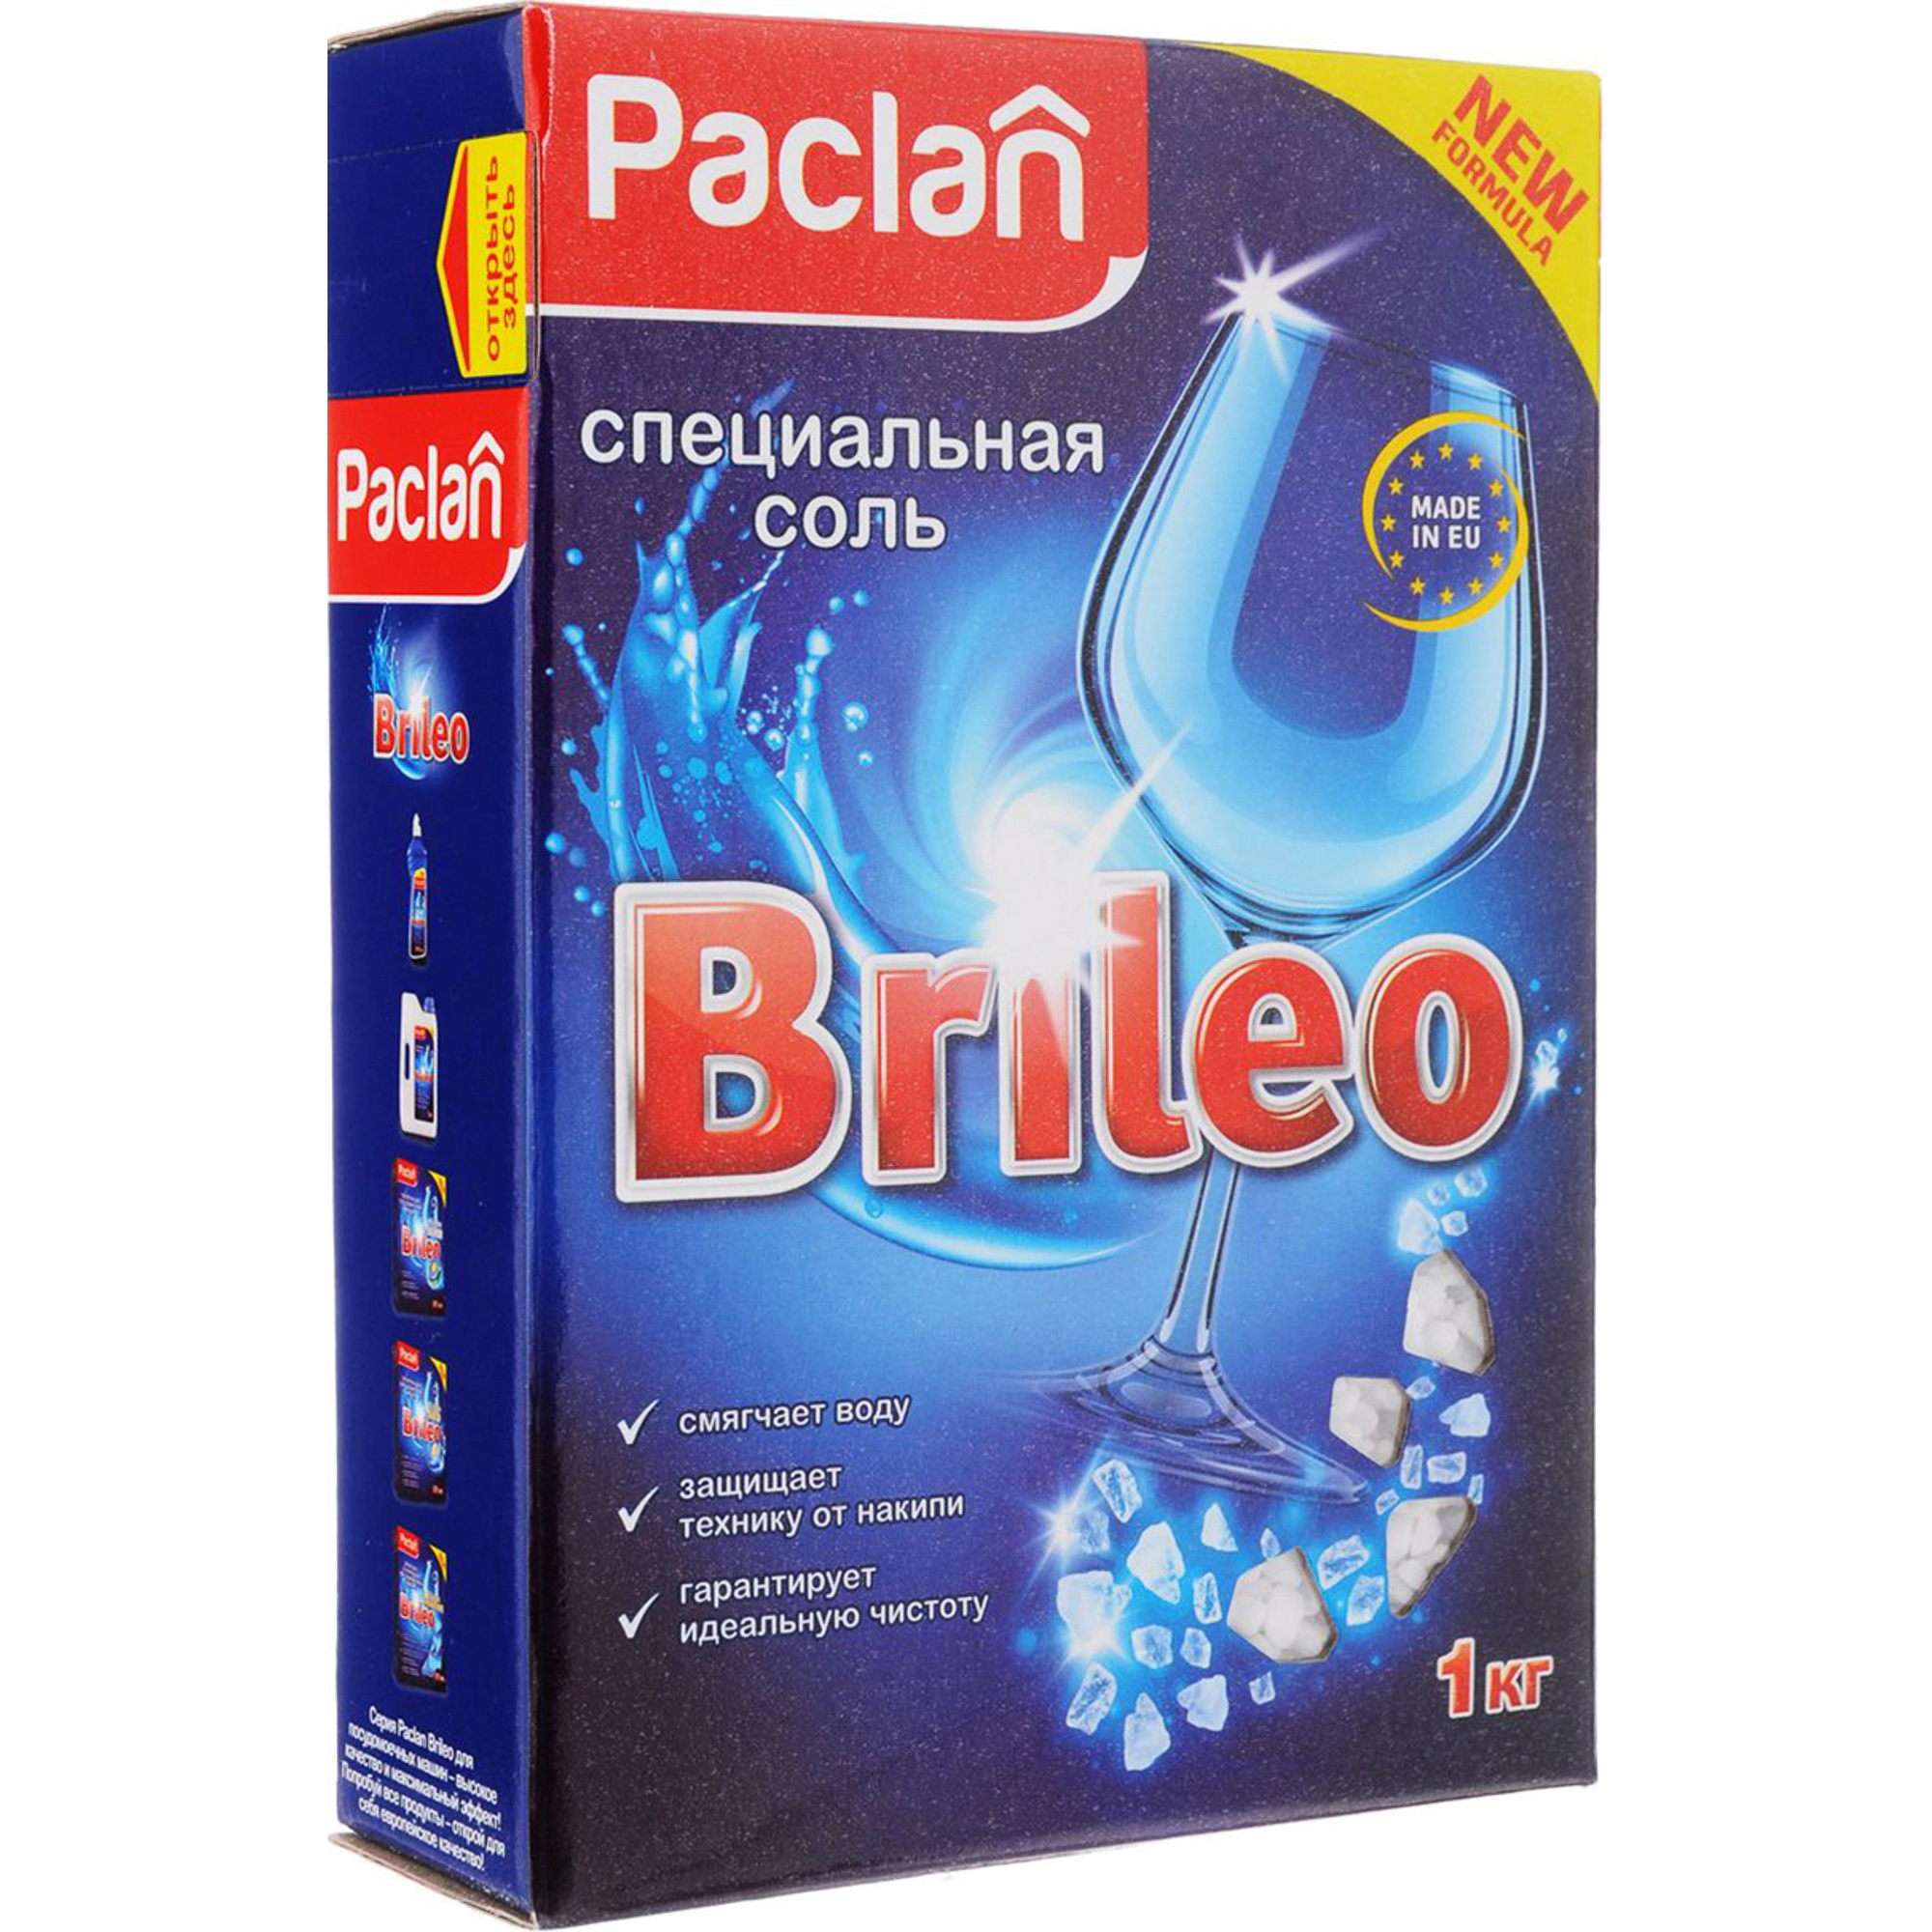 Специальная соль Paclan Brileo для посудомоечных машин 1 кг соль таблетки meule для посудомоечных машин 2 кг